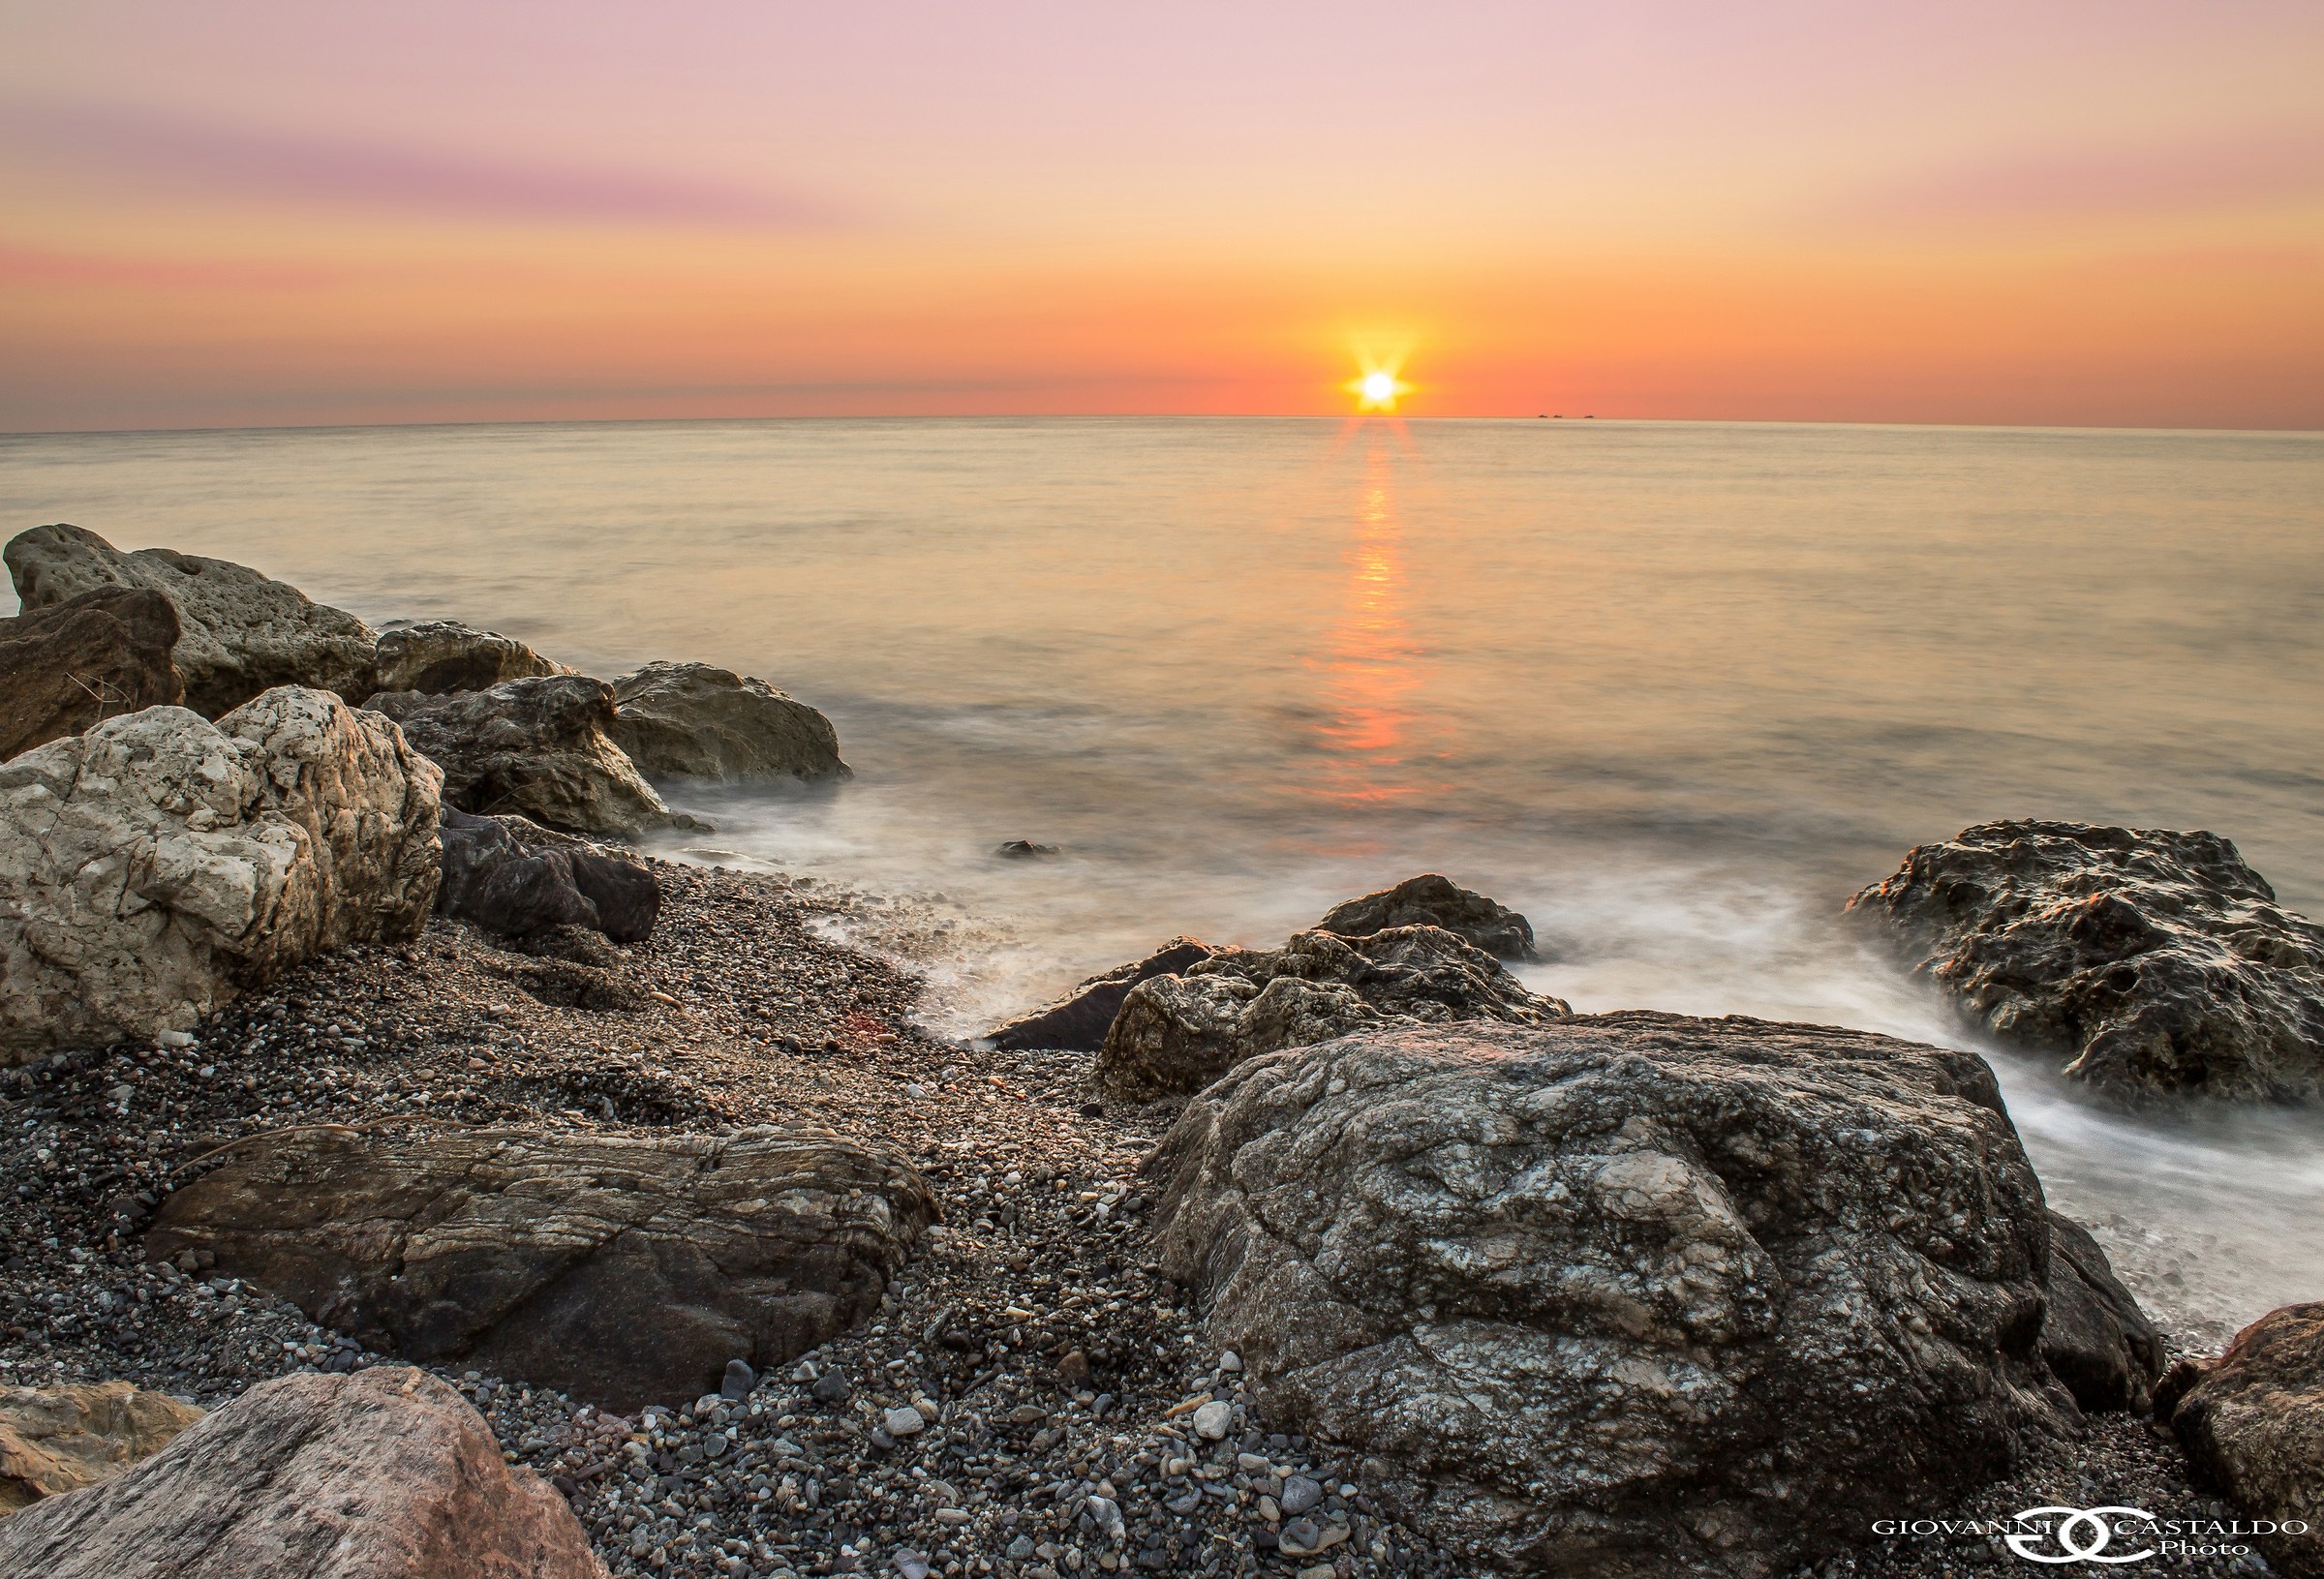 sunrise on the Ionian Sea...